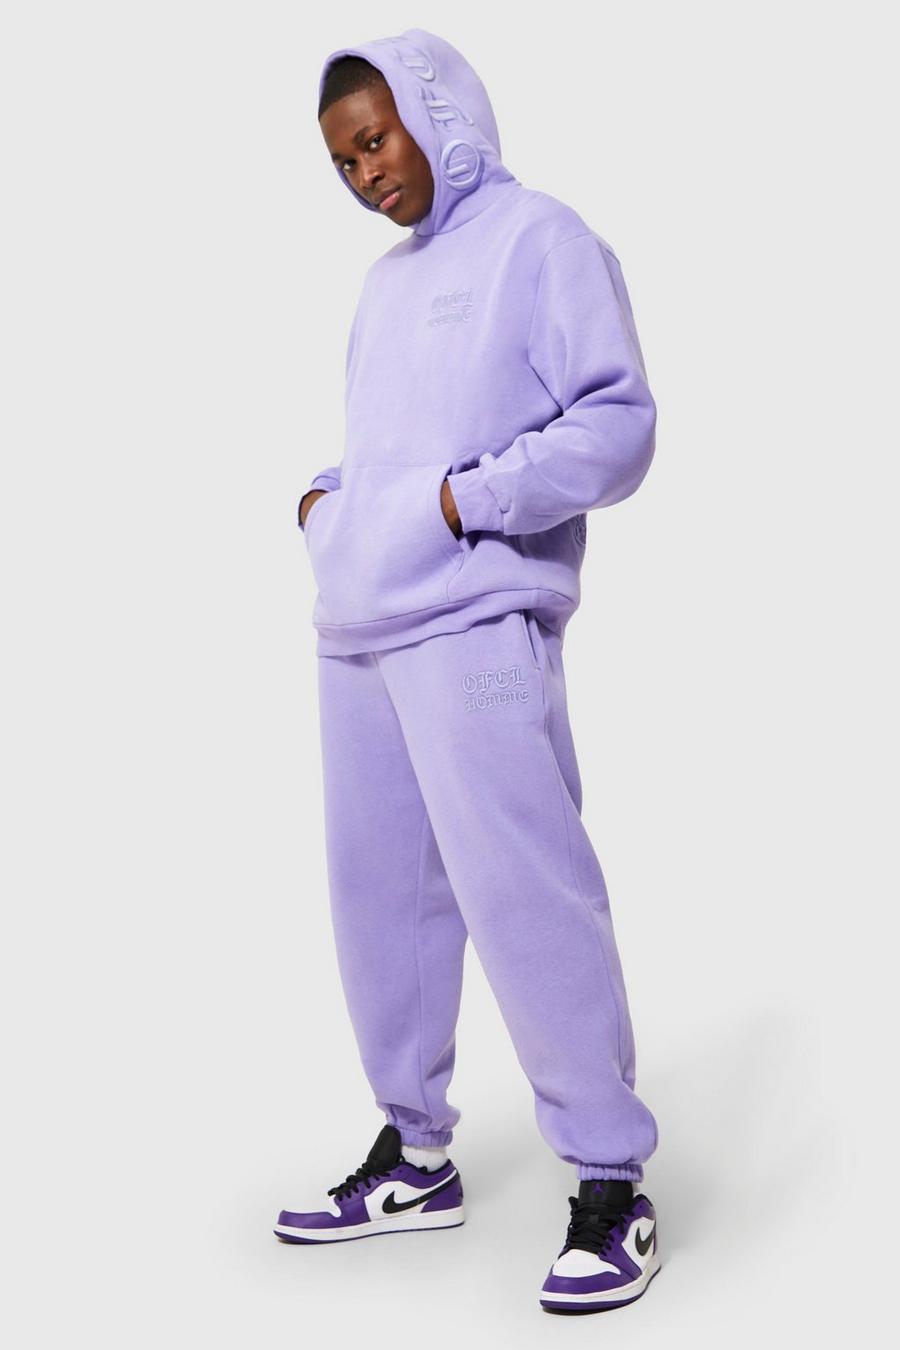 Bestickter Official Man Trainingsanzug , Purple violett